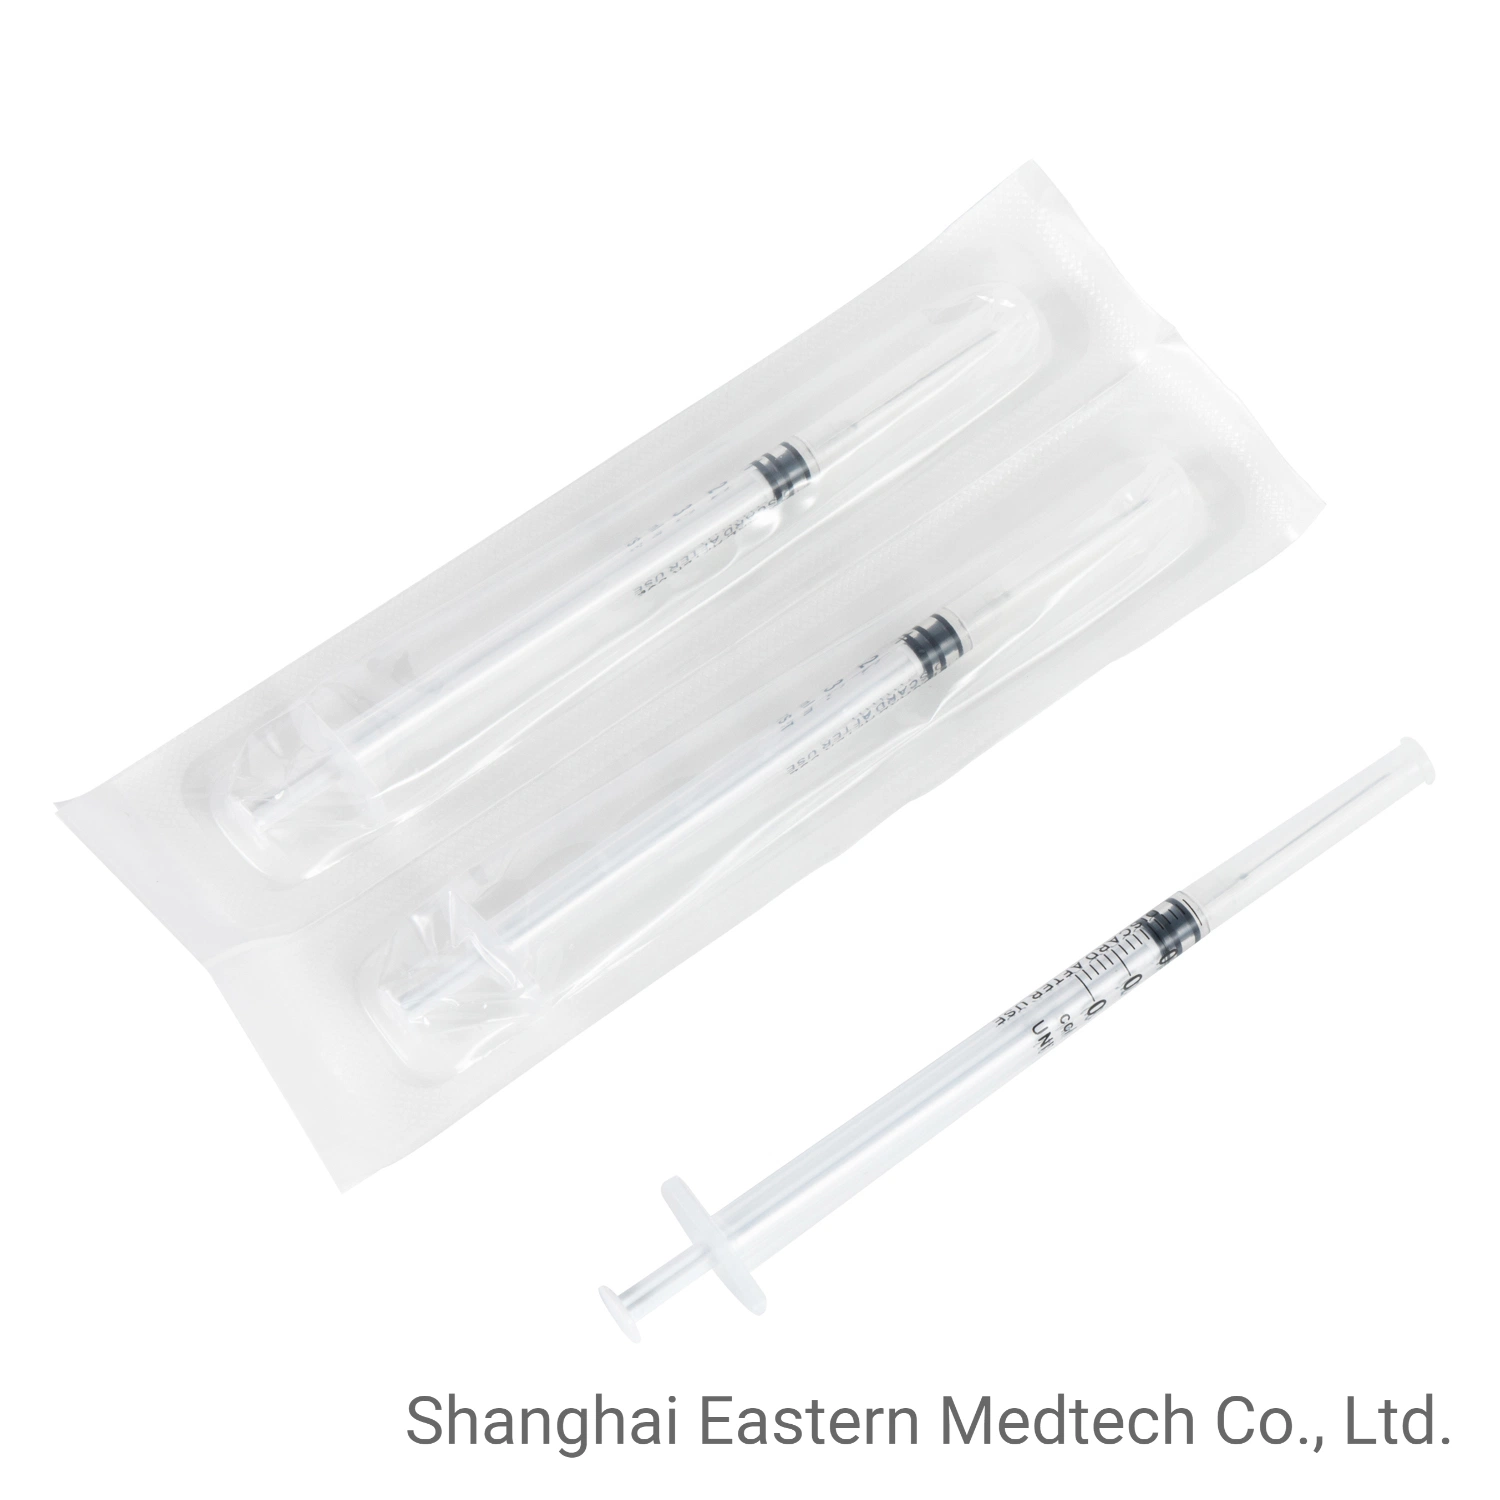 معدات المستشفى المنتجات الطبية القابلة للاستخدام مرة واحدة، خالٍ من اللاتكس، للاستخدام الفردي، تحمل علامة CE Fixed Needle 1 مل، محقنة اللقاح